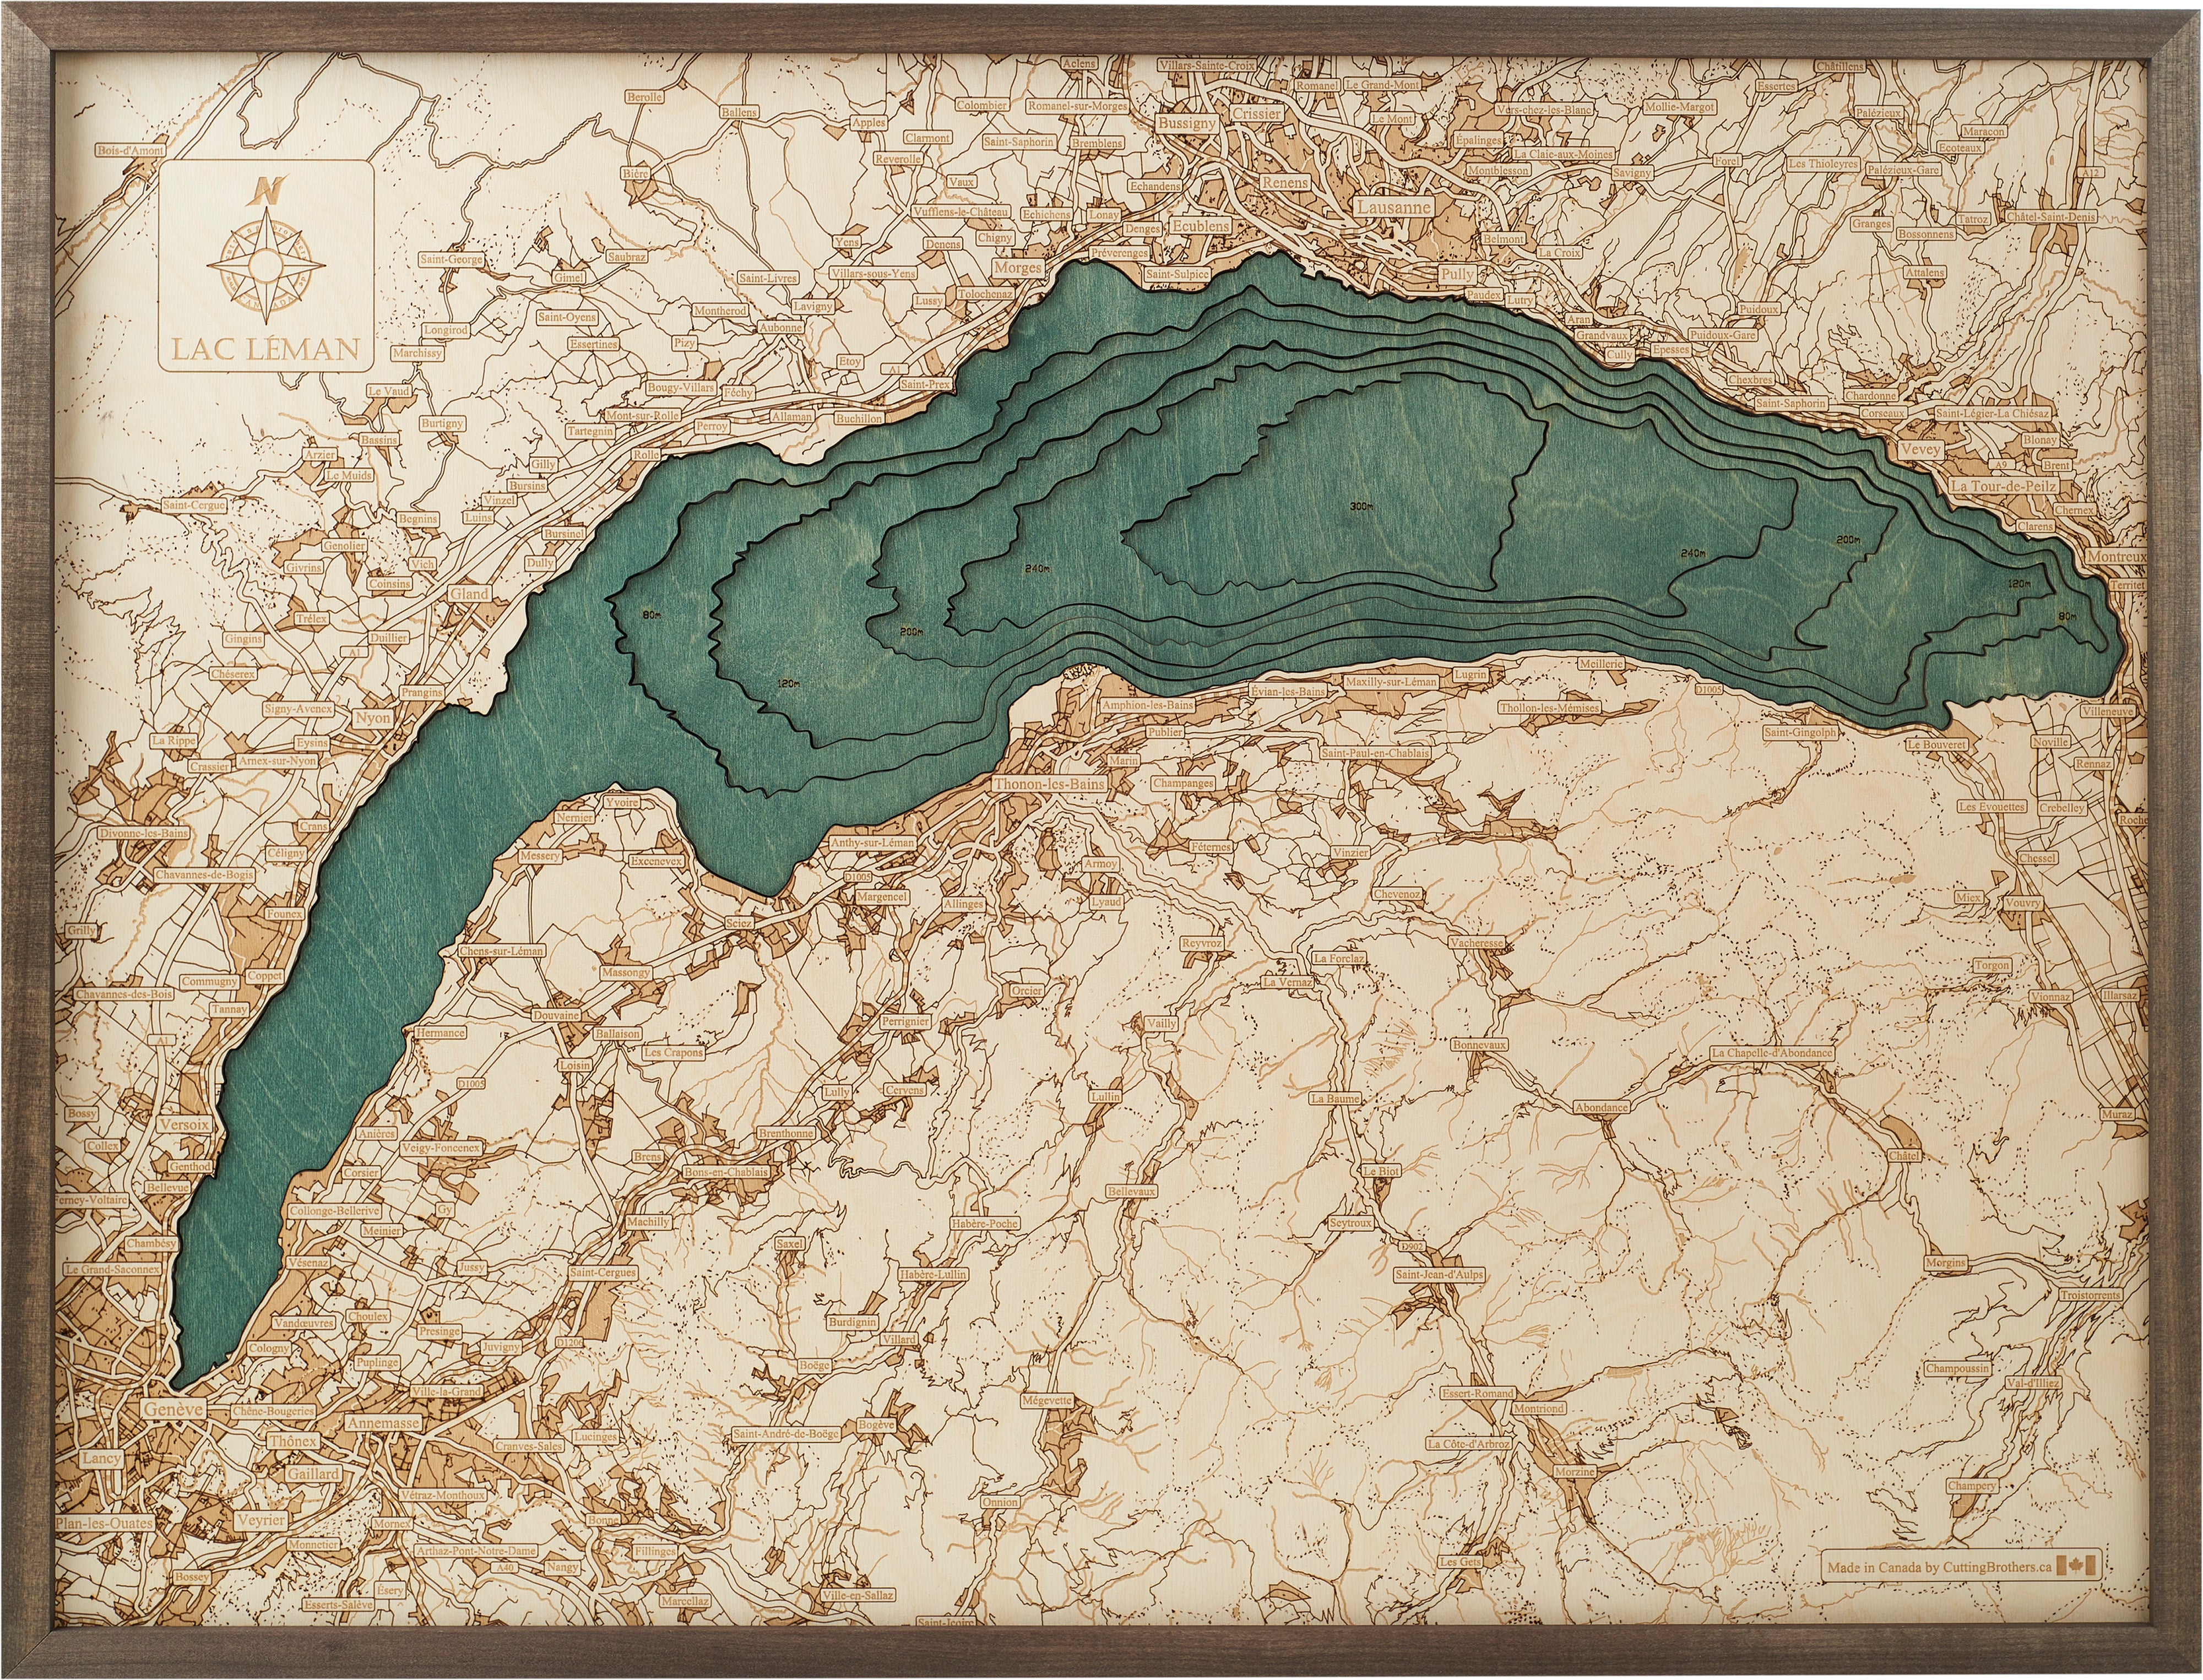 LAC LEMAN LAKE GENEVA 3D Wooden Wall Map - Version L